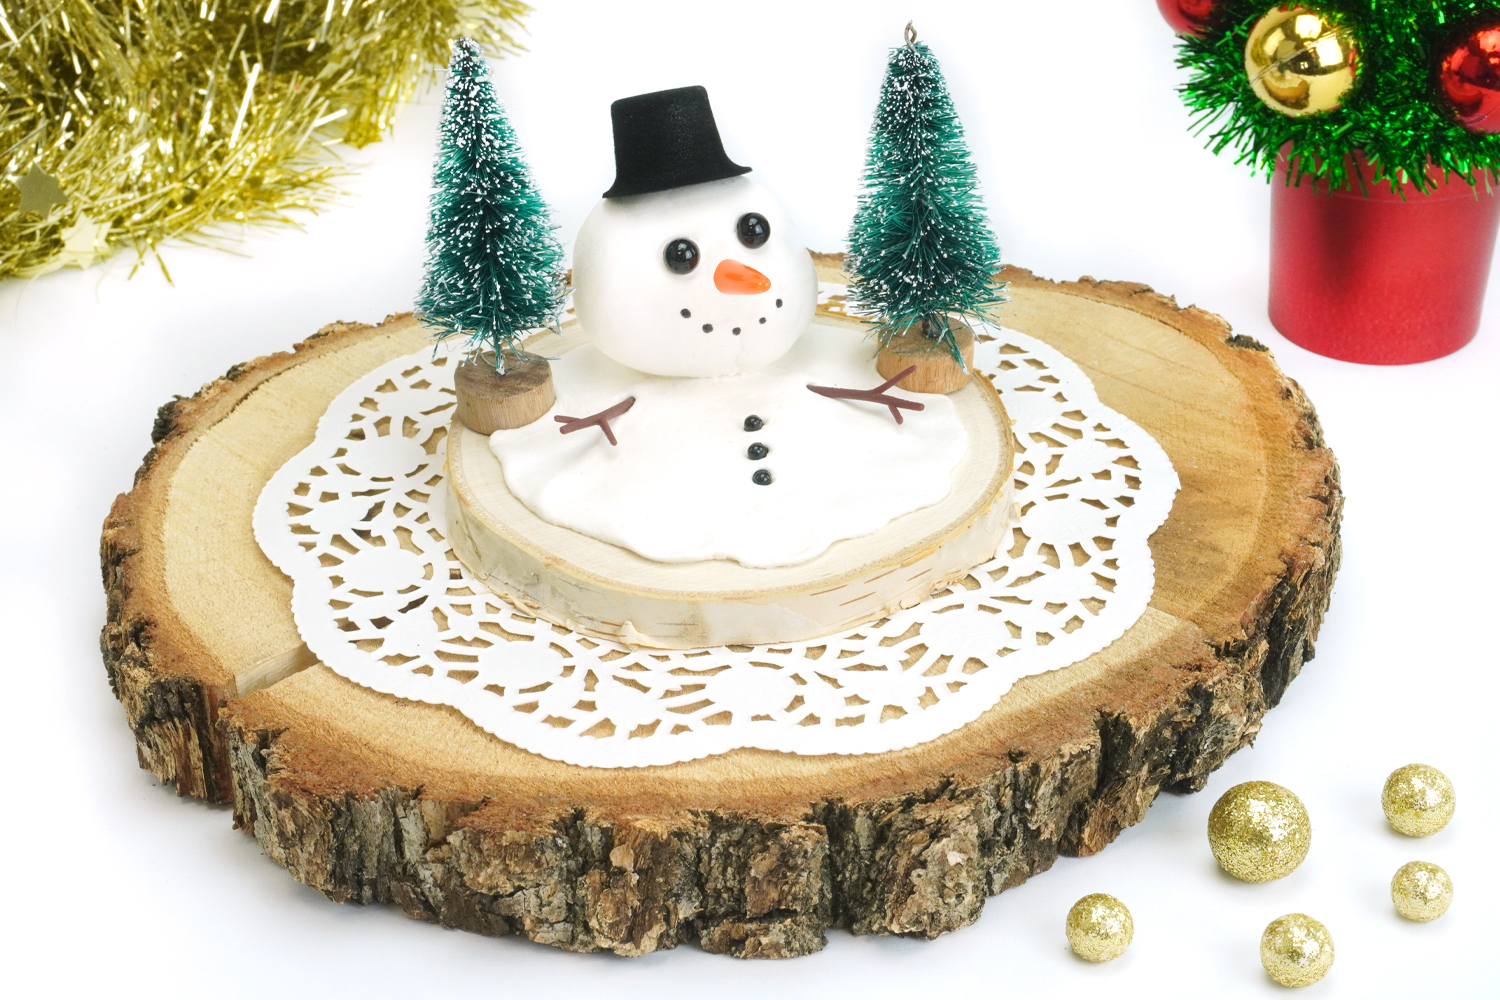 Comment réaliser des décorations en plâtre alimentaire (pâte autodurcissante)  ? – DIY de Noël – Madamcadamia